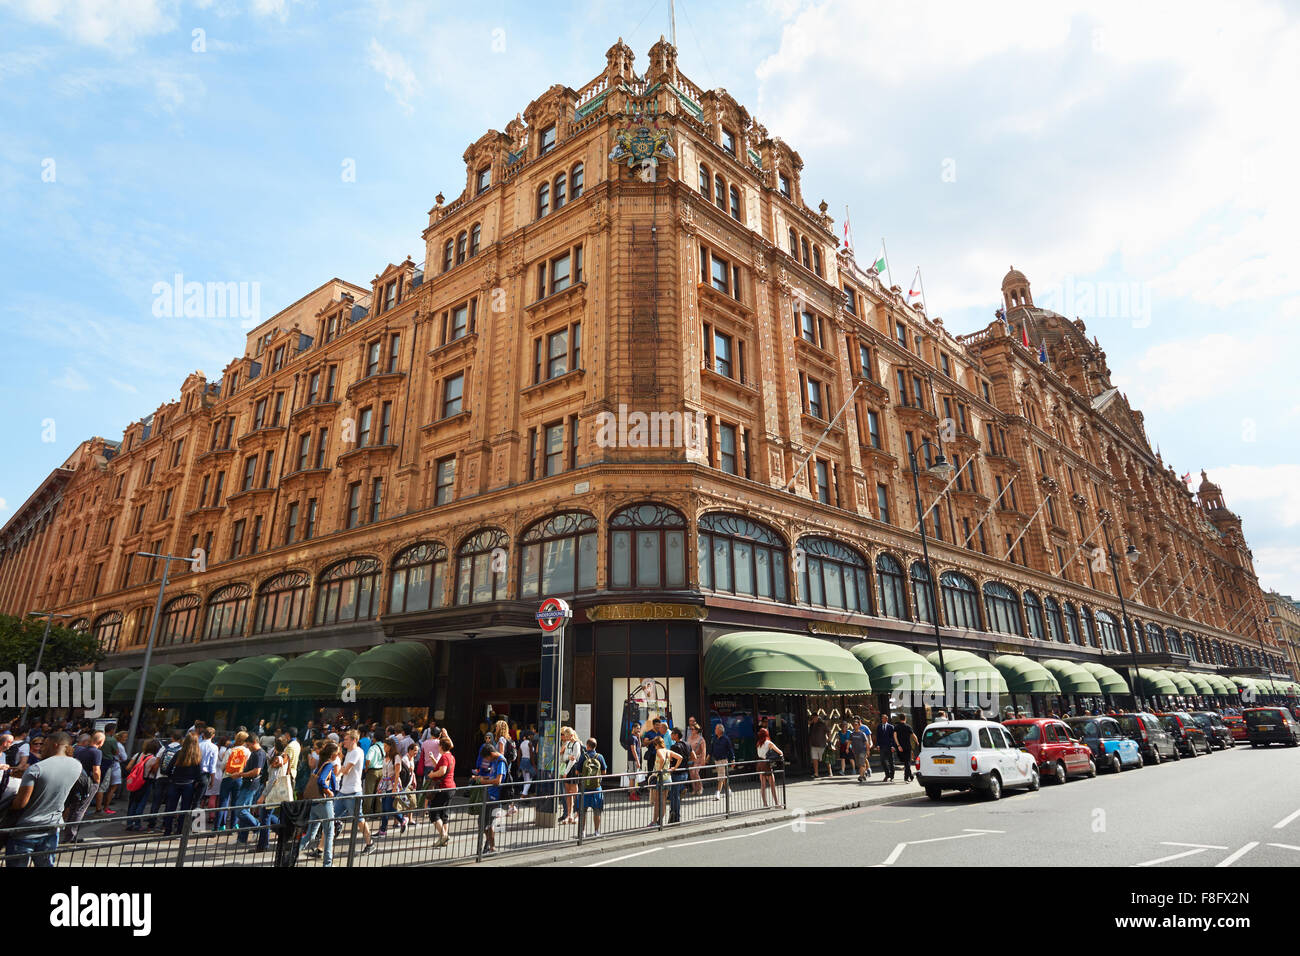 La famosa tienda Harrods edificio en una tarde de verano, la gente caminando en Londres Foto de stock